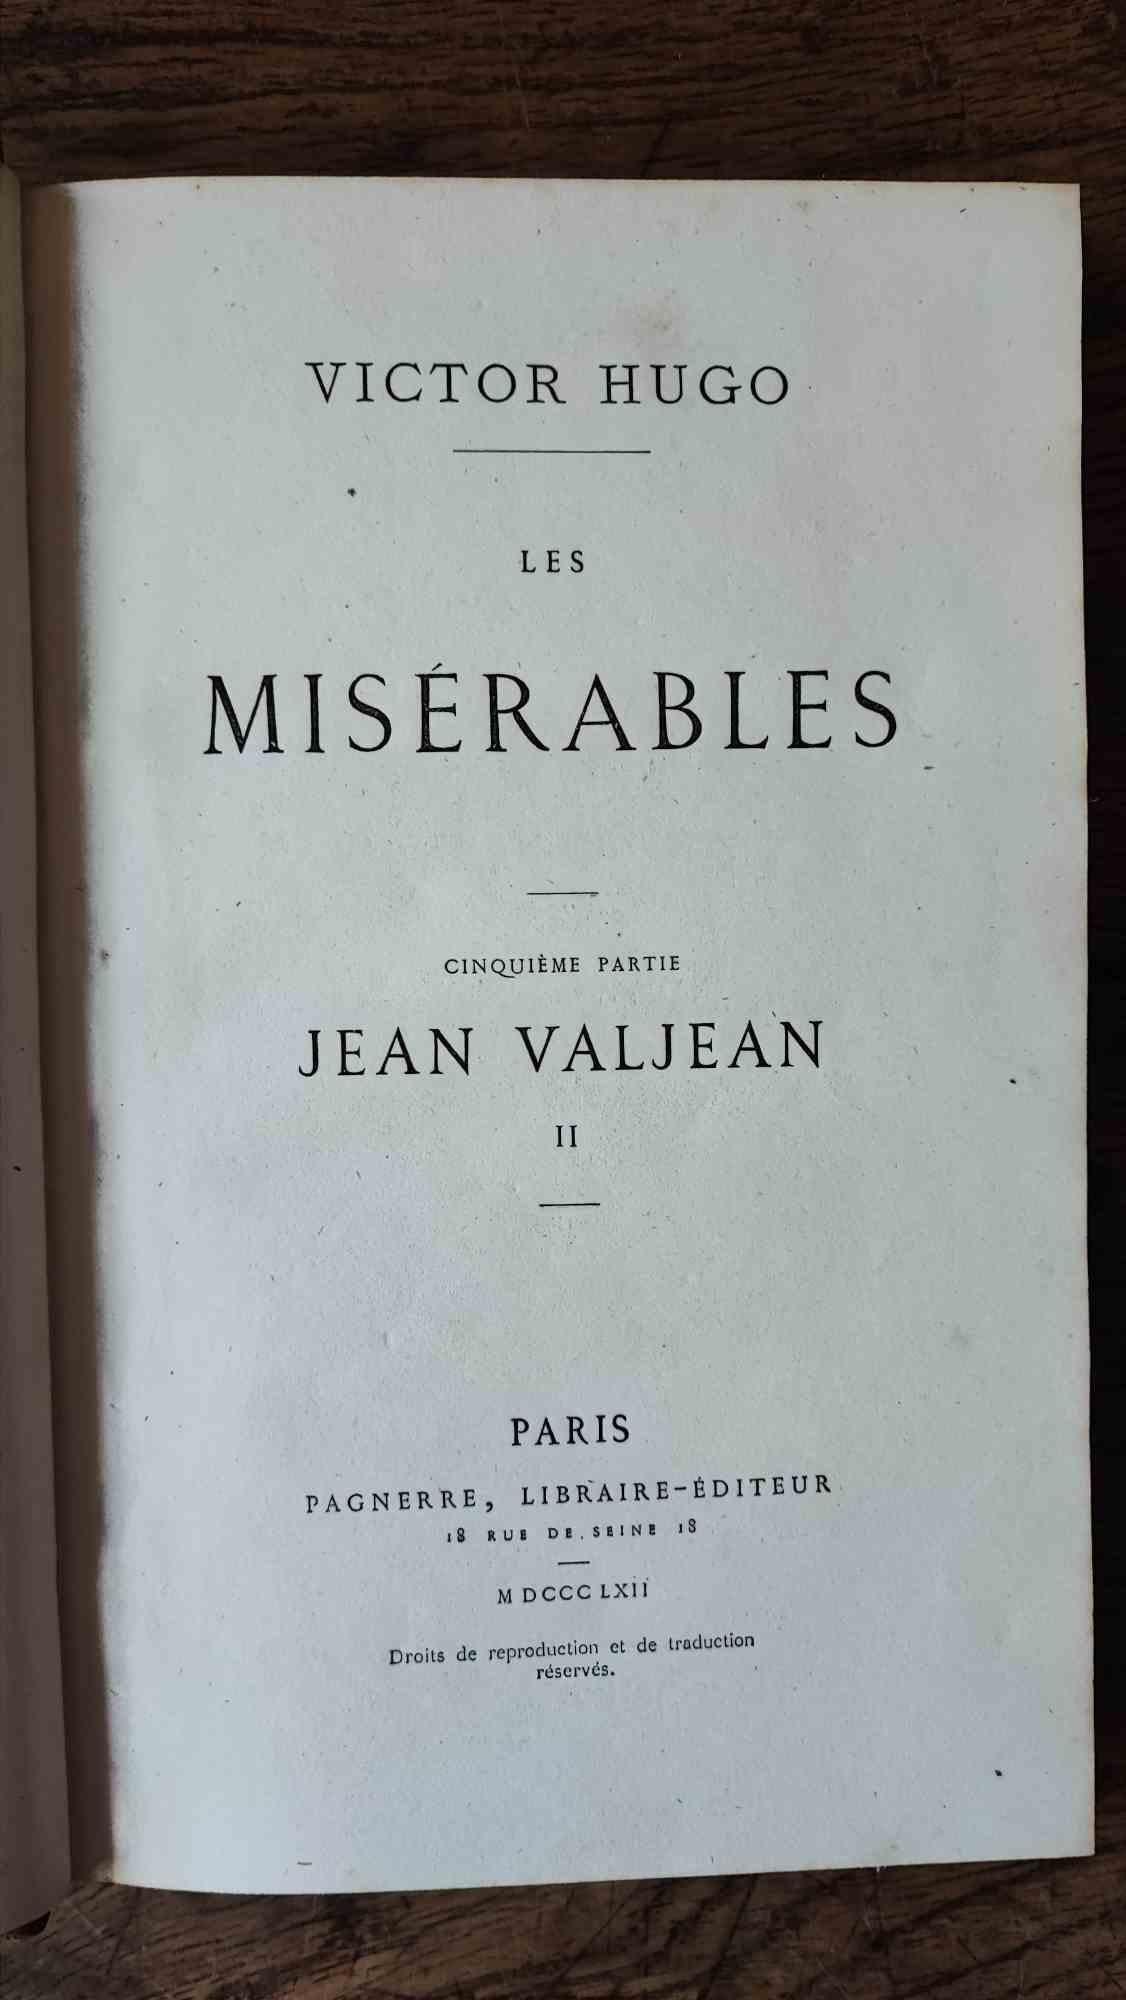 Les Misérables ist ein seltenes Buch von Victor Hugo aus dem Jahr 1862.

Herausgegeben von Pagnerre - Paris. 

Originalausgabe in coevalem Halbledereinband.

10 Bände in 8° (21 x 15 cm). 4000 Seiten.

In gutem Zustand.                 